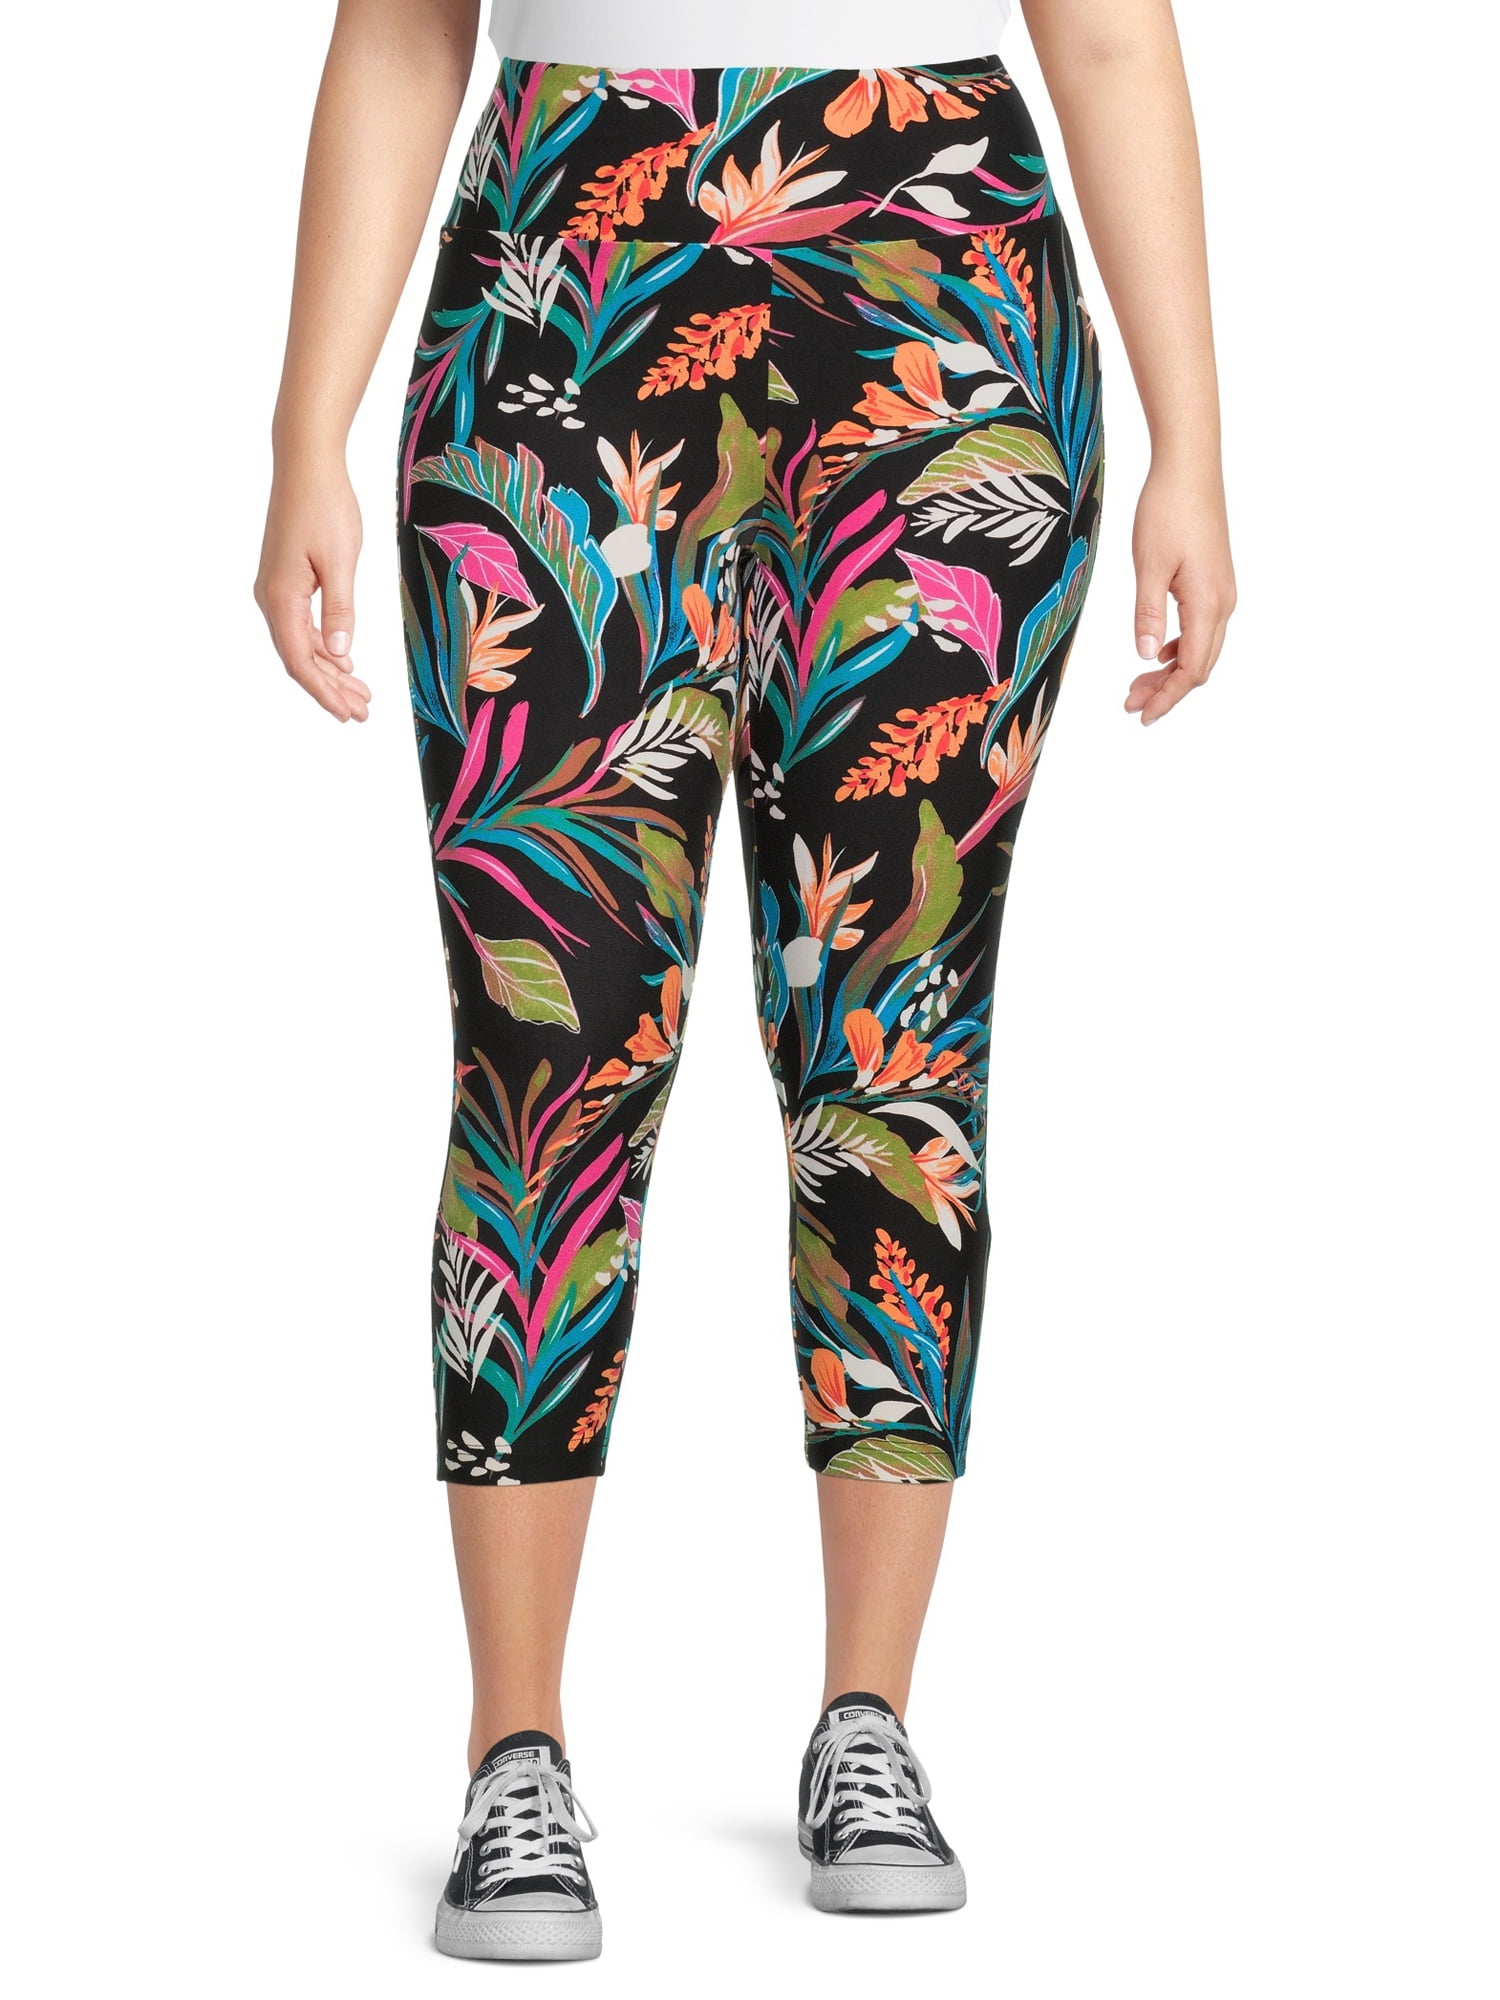 Terra & Sky Women's Plus Size Printed Capri Leggings - Walmart.com